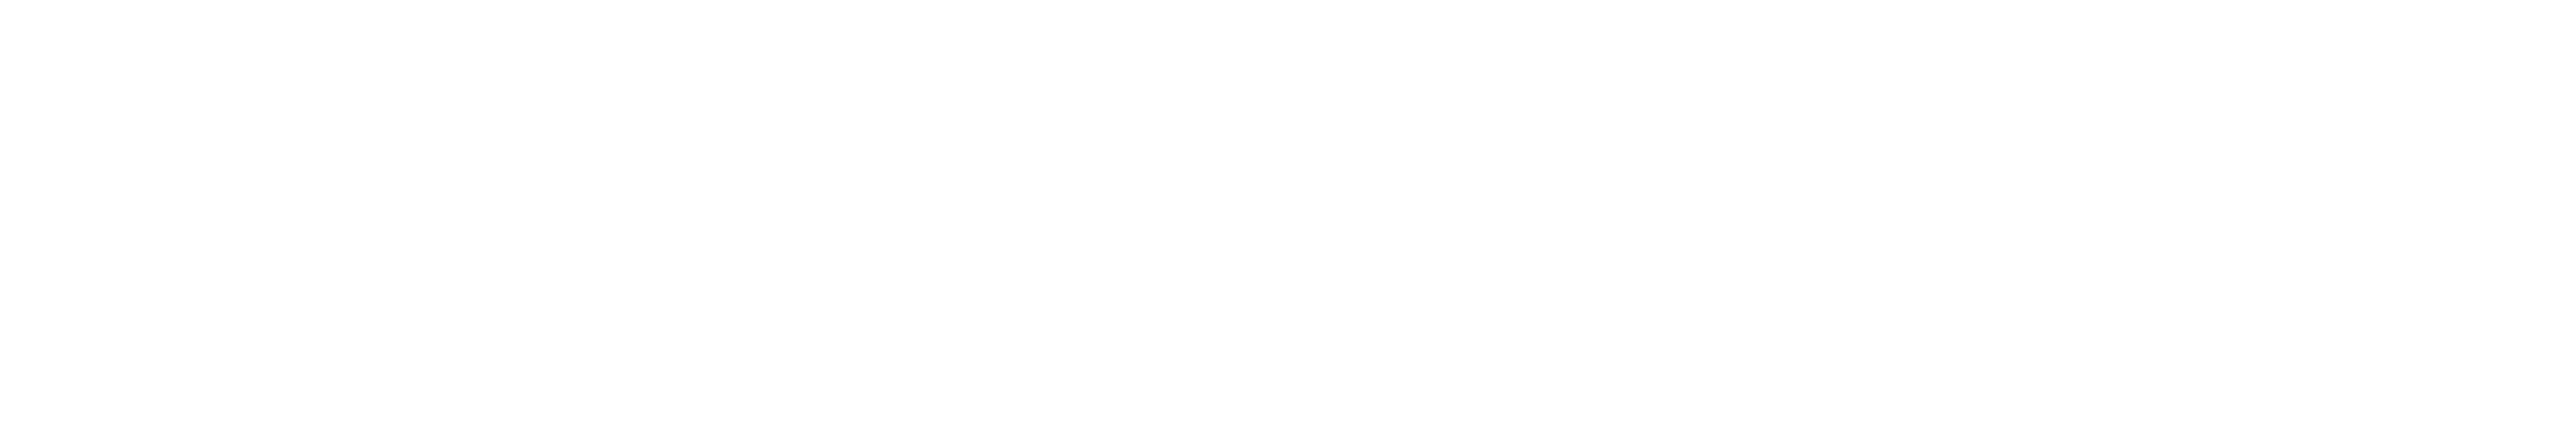 WakandaFestival_Logo_Final-14bb